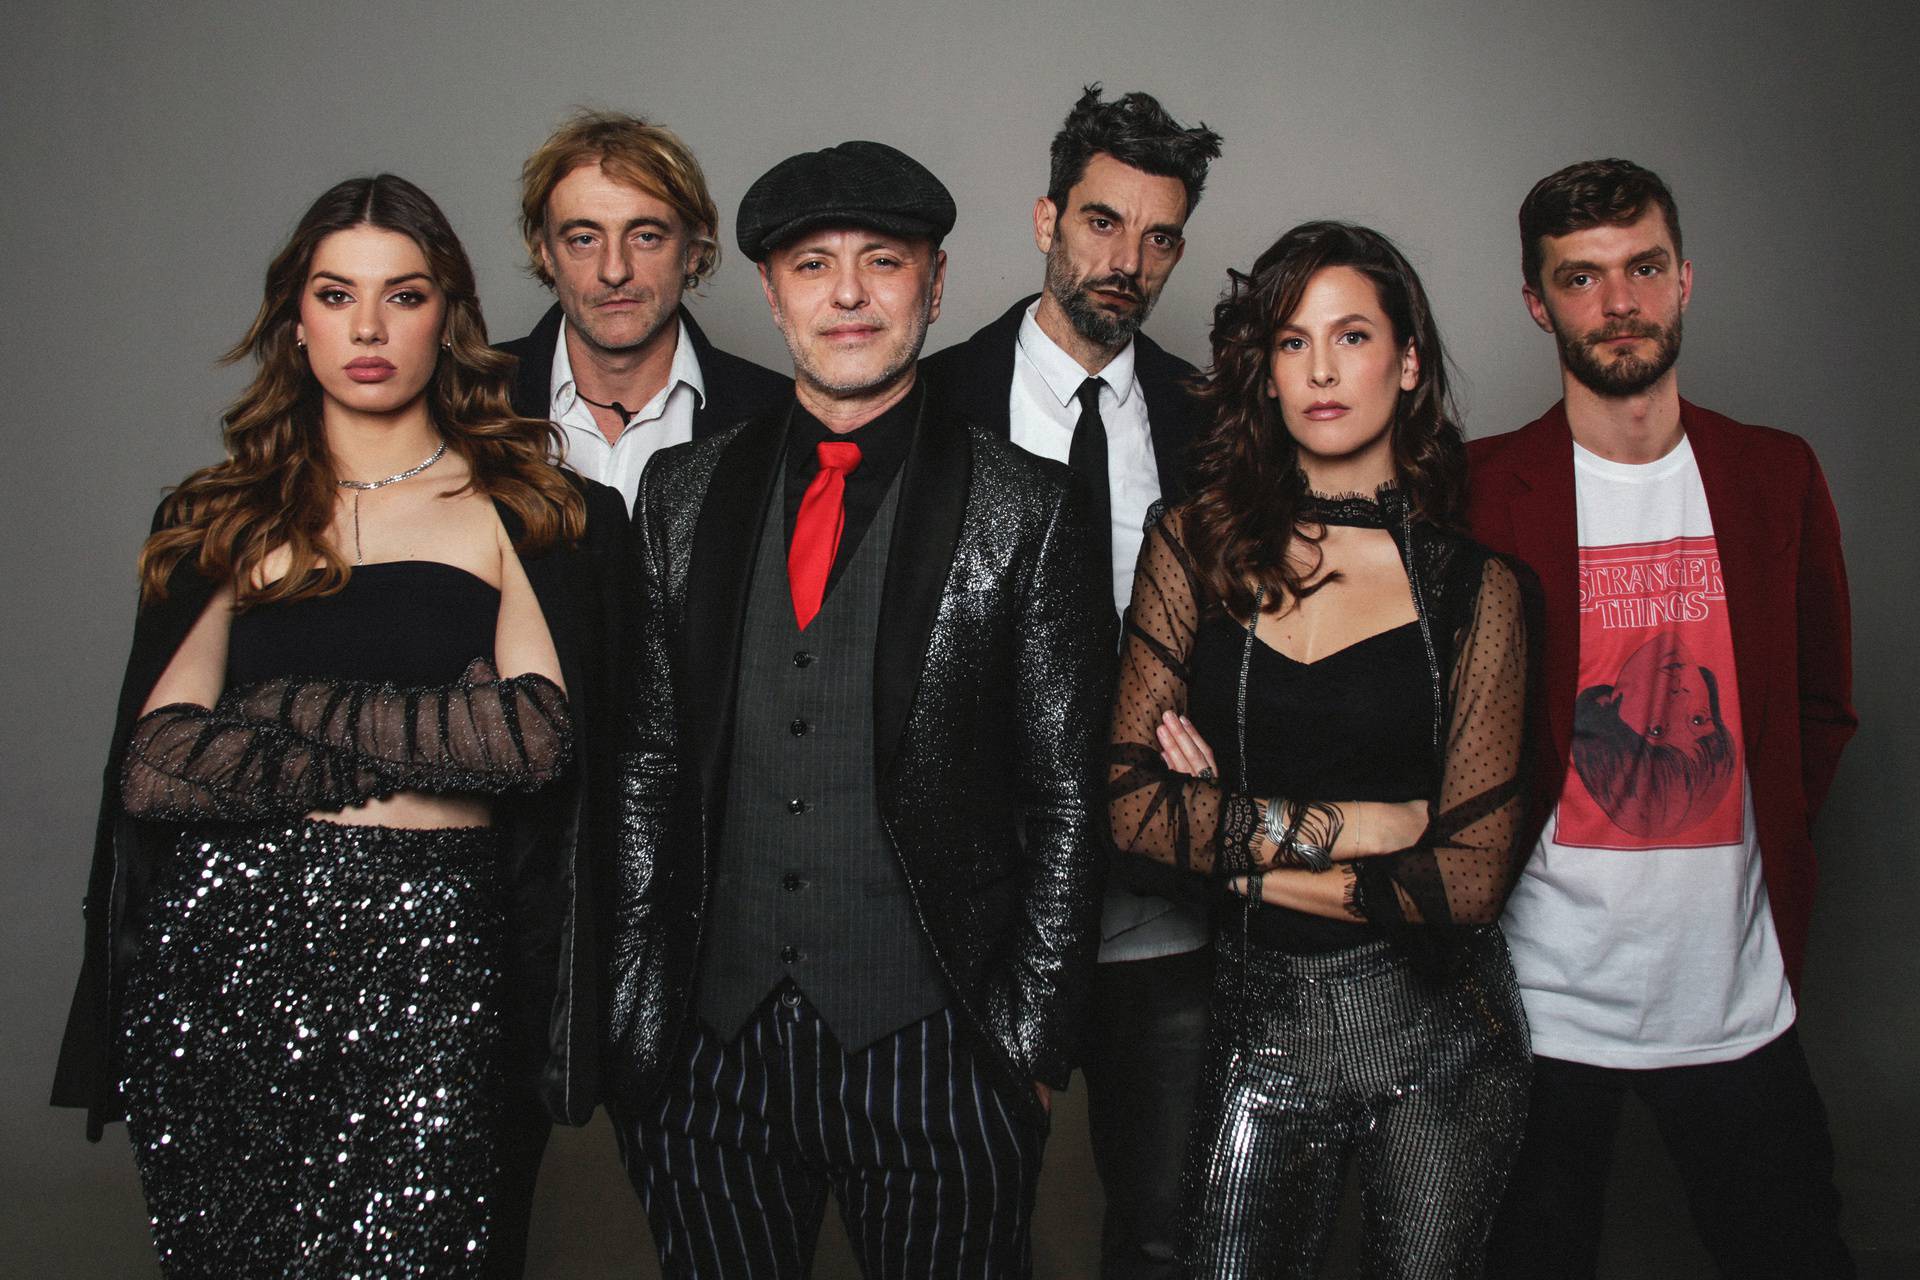 Frontmen Detoura uoči nastupa na 'Ponosu Hrvatske': 'Glazba je isto jedan oblik humanosti'